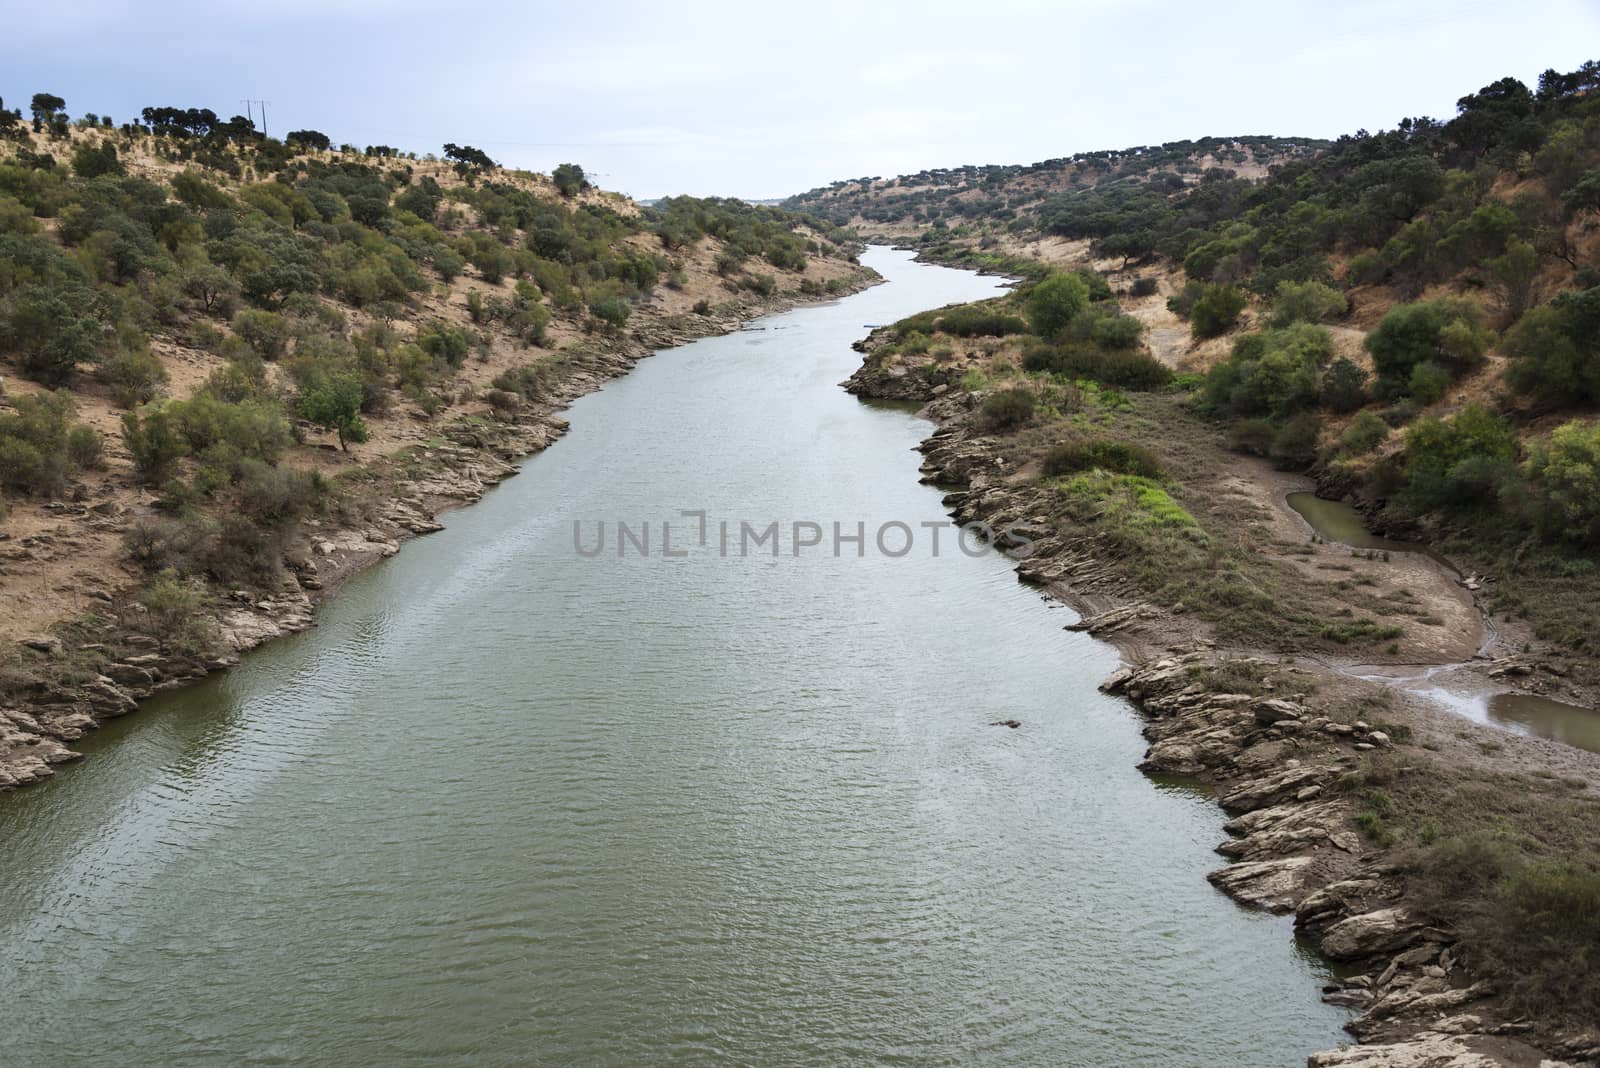 river in Portugal from Ardila to Moura in Alentejo